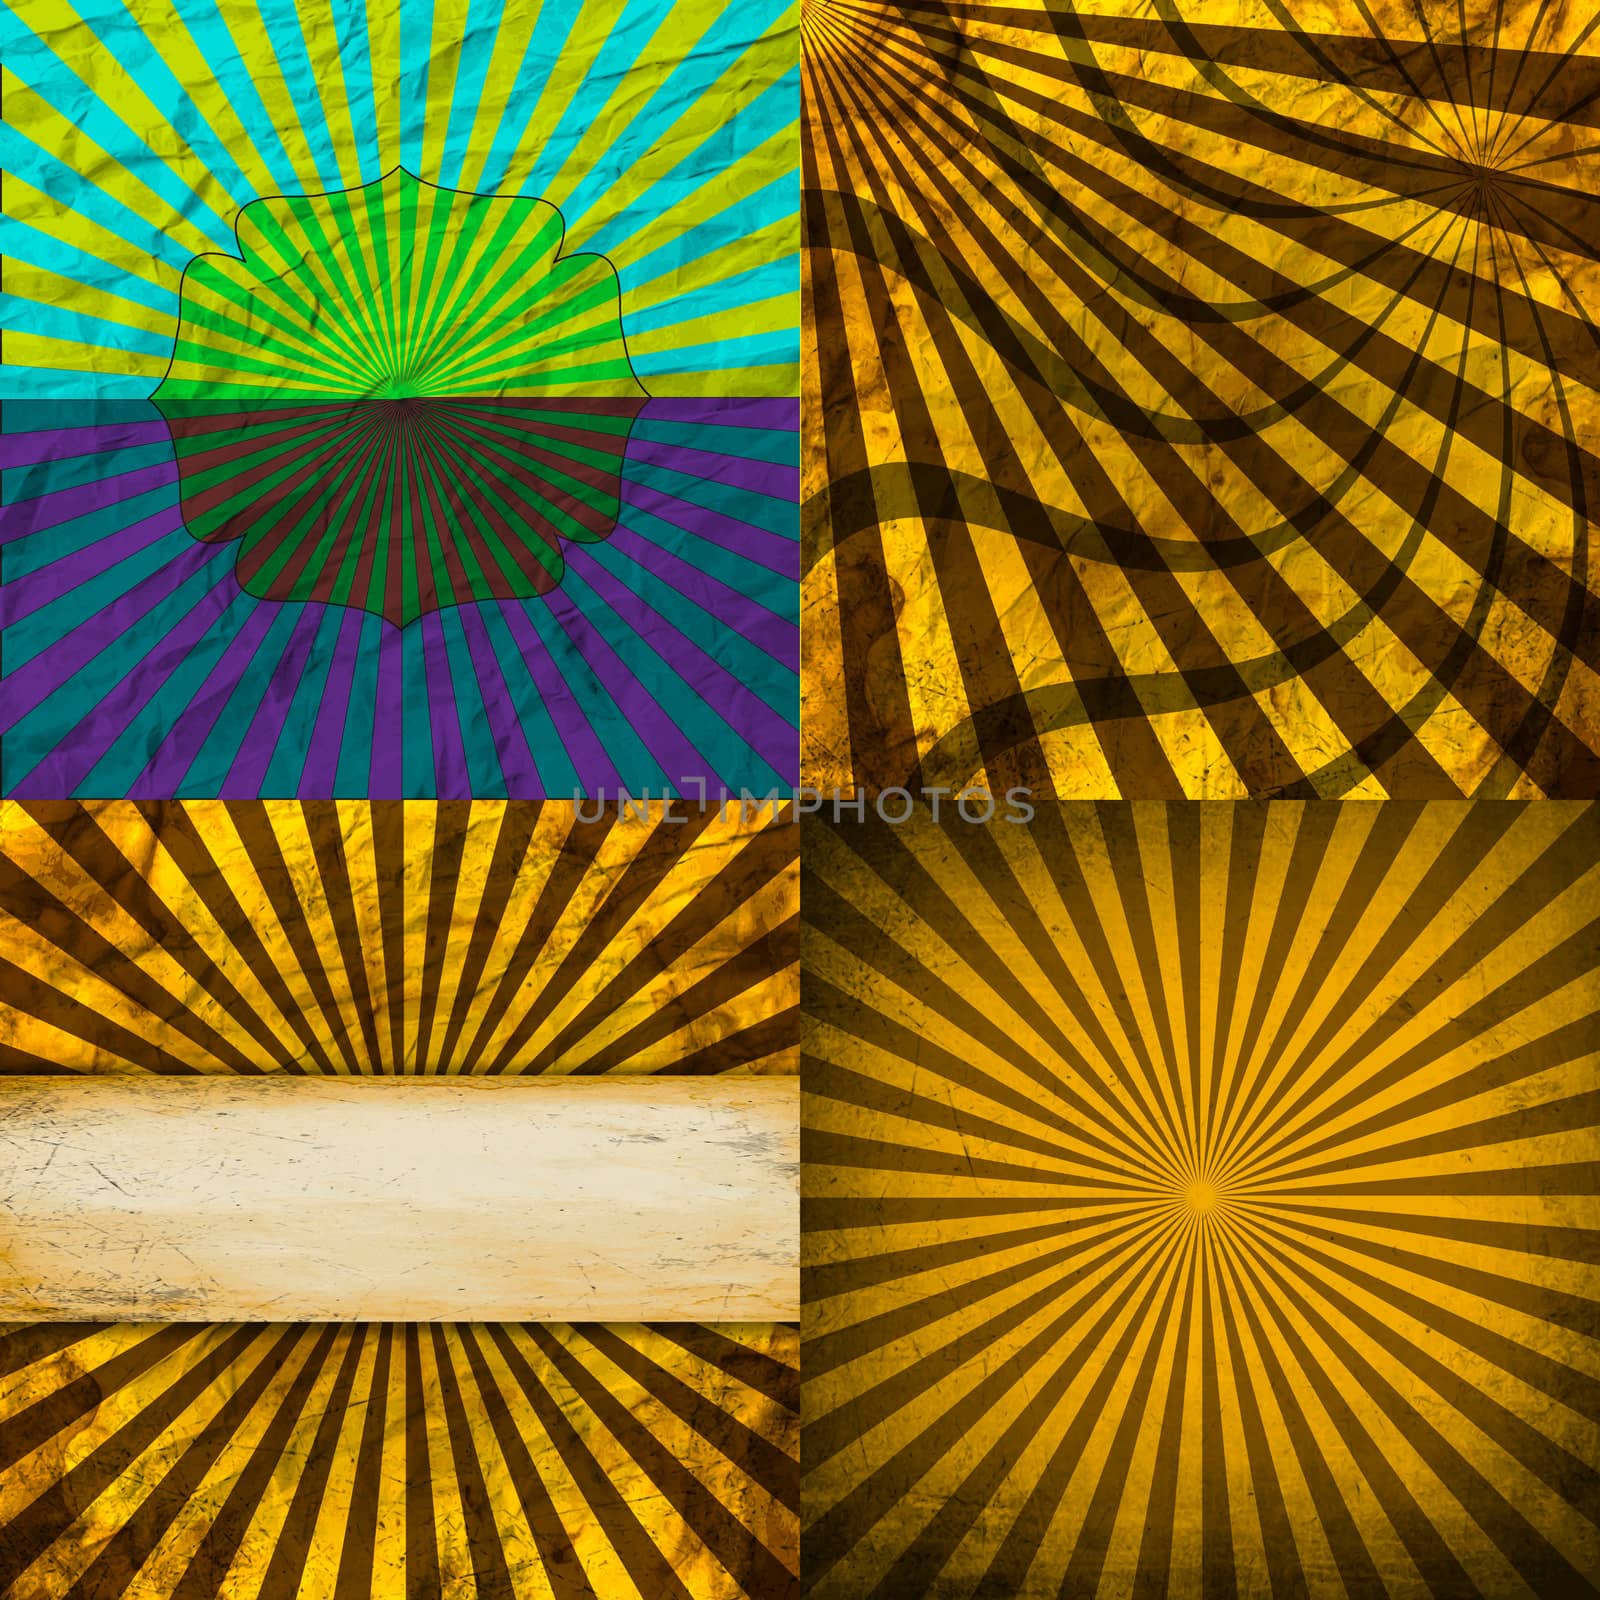 Sunburst Retro Textured Grunge Background Set. Vintage Rays.  by serhii_lohvyniuk